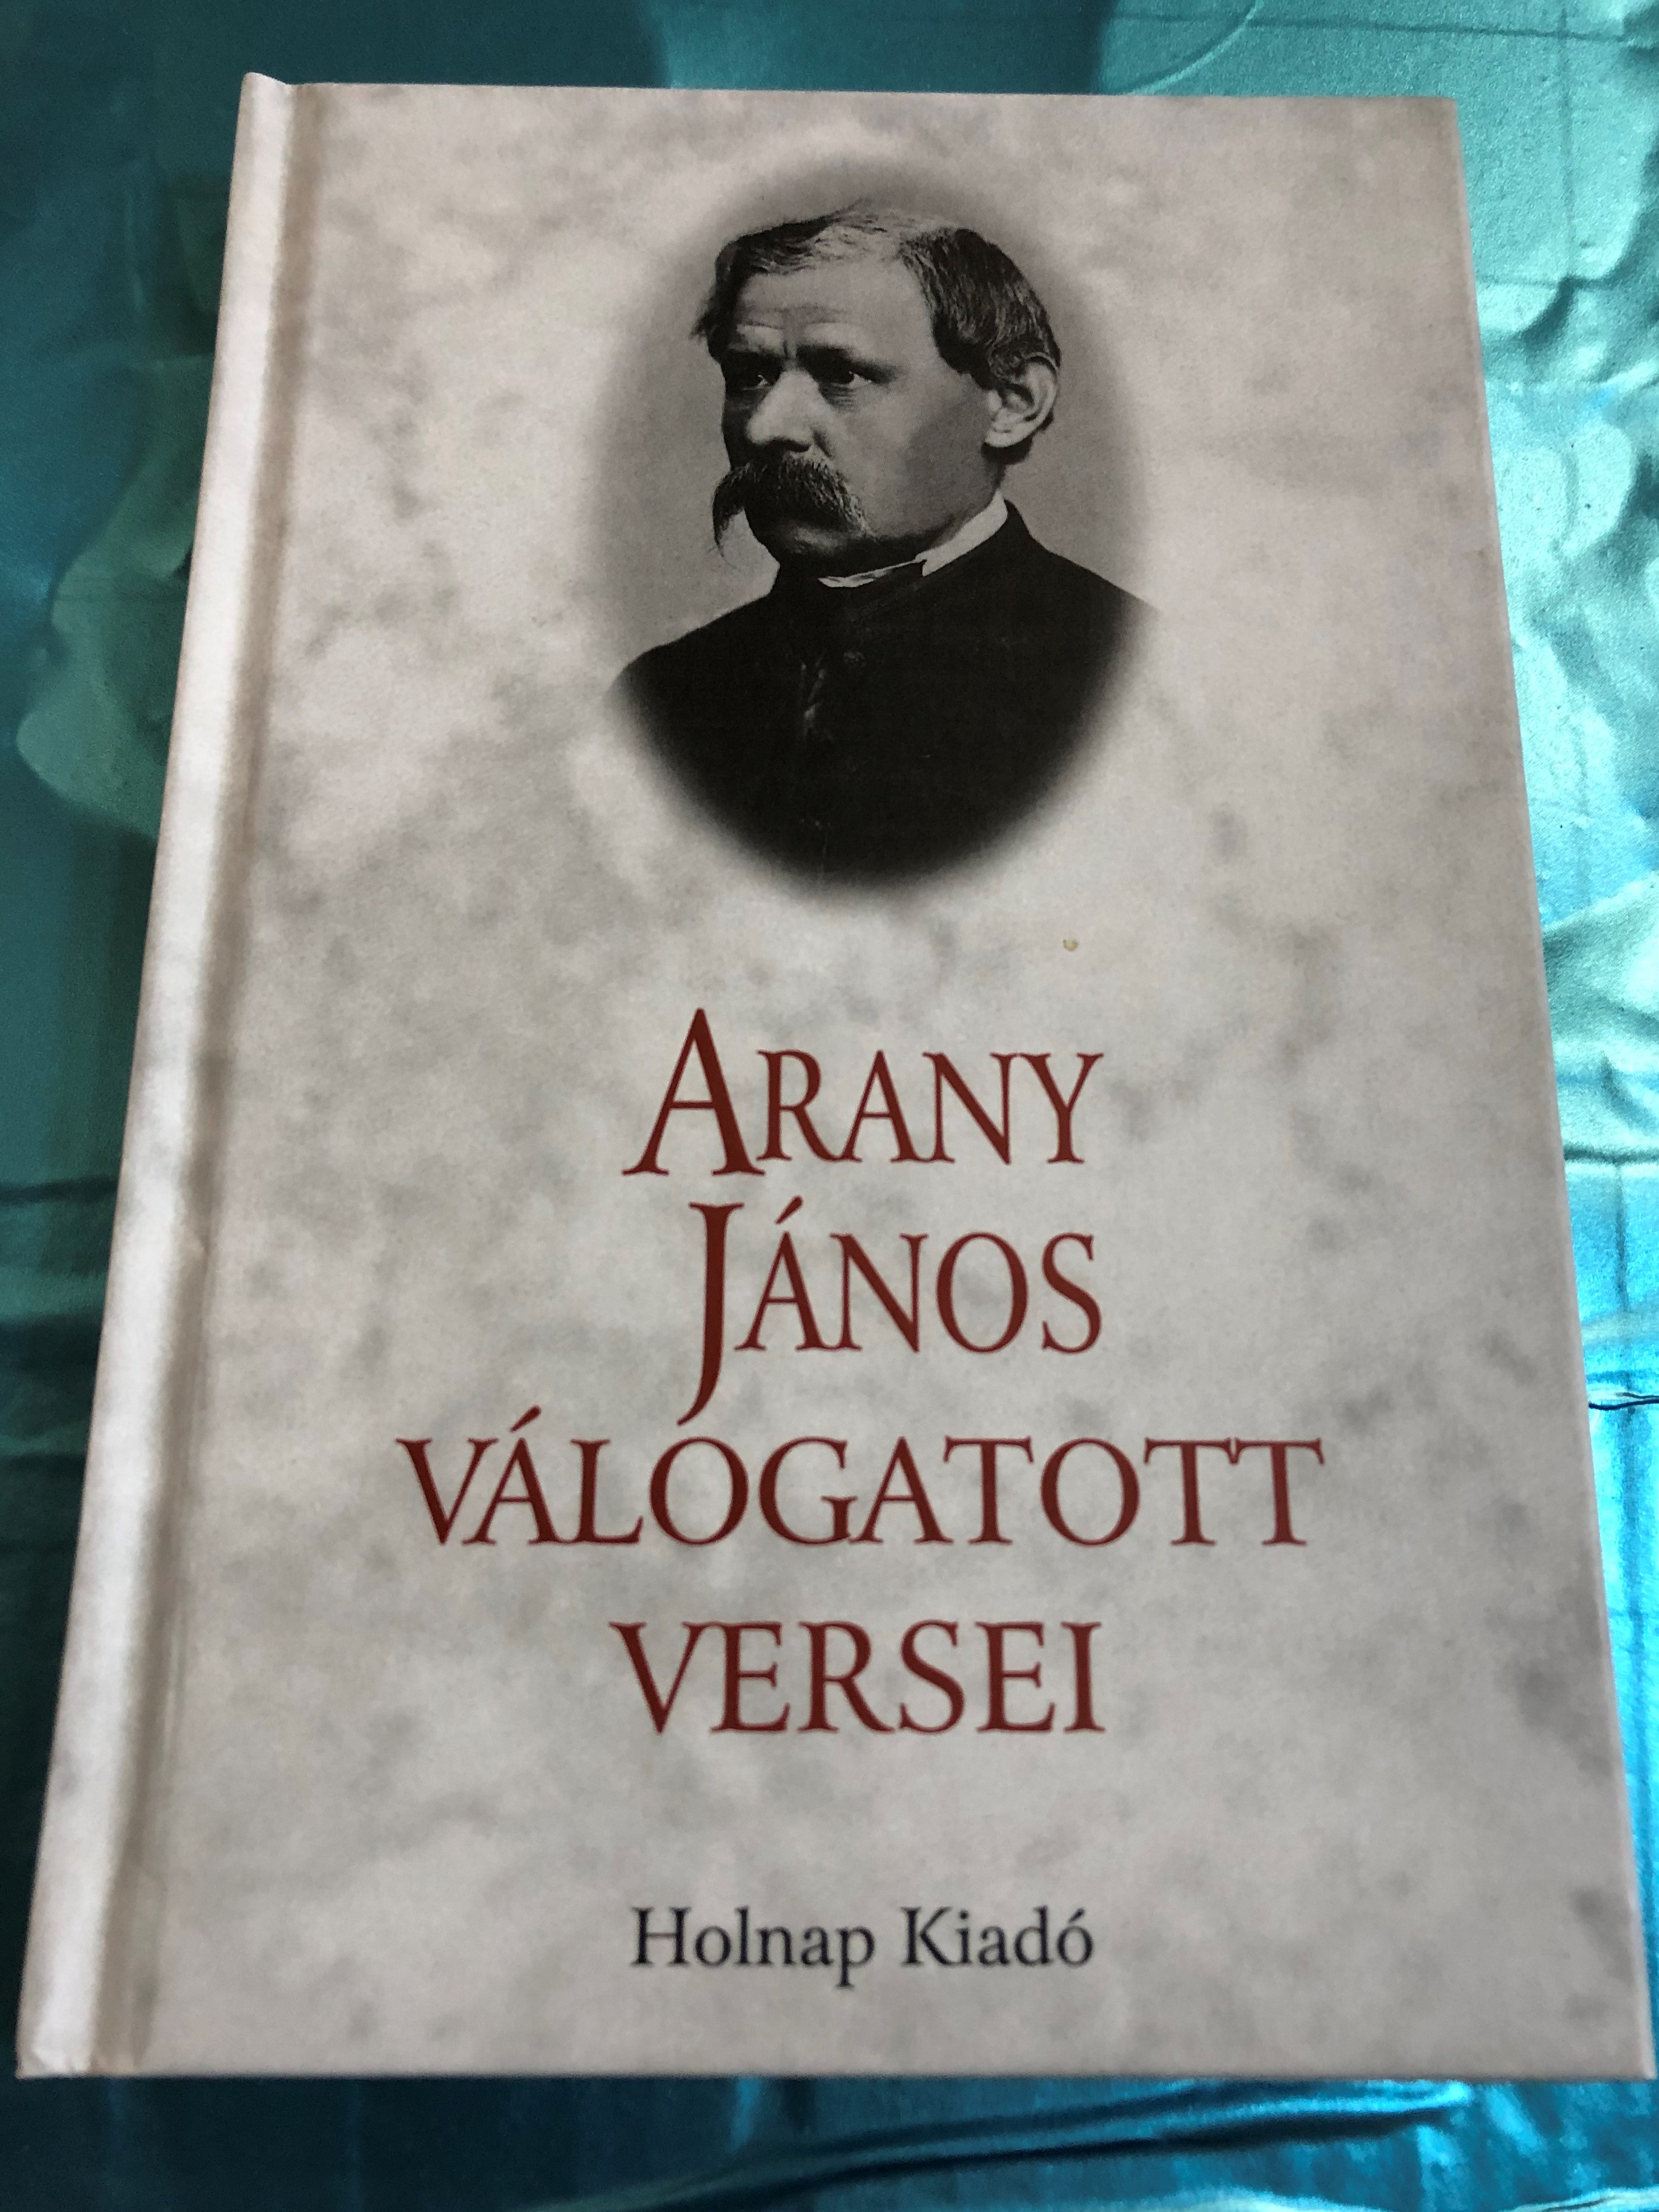 Arany János Válogatott versei - János Arany - Selection of Poems / Holnap  kiadó 2003 / Hardcover - bibleinmylanguage